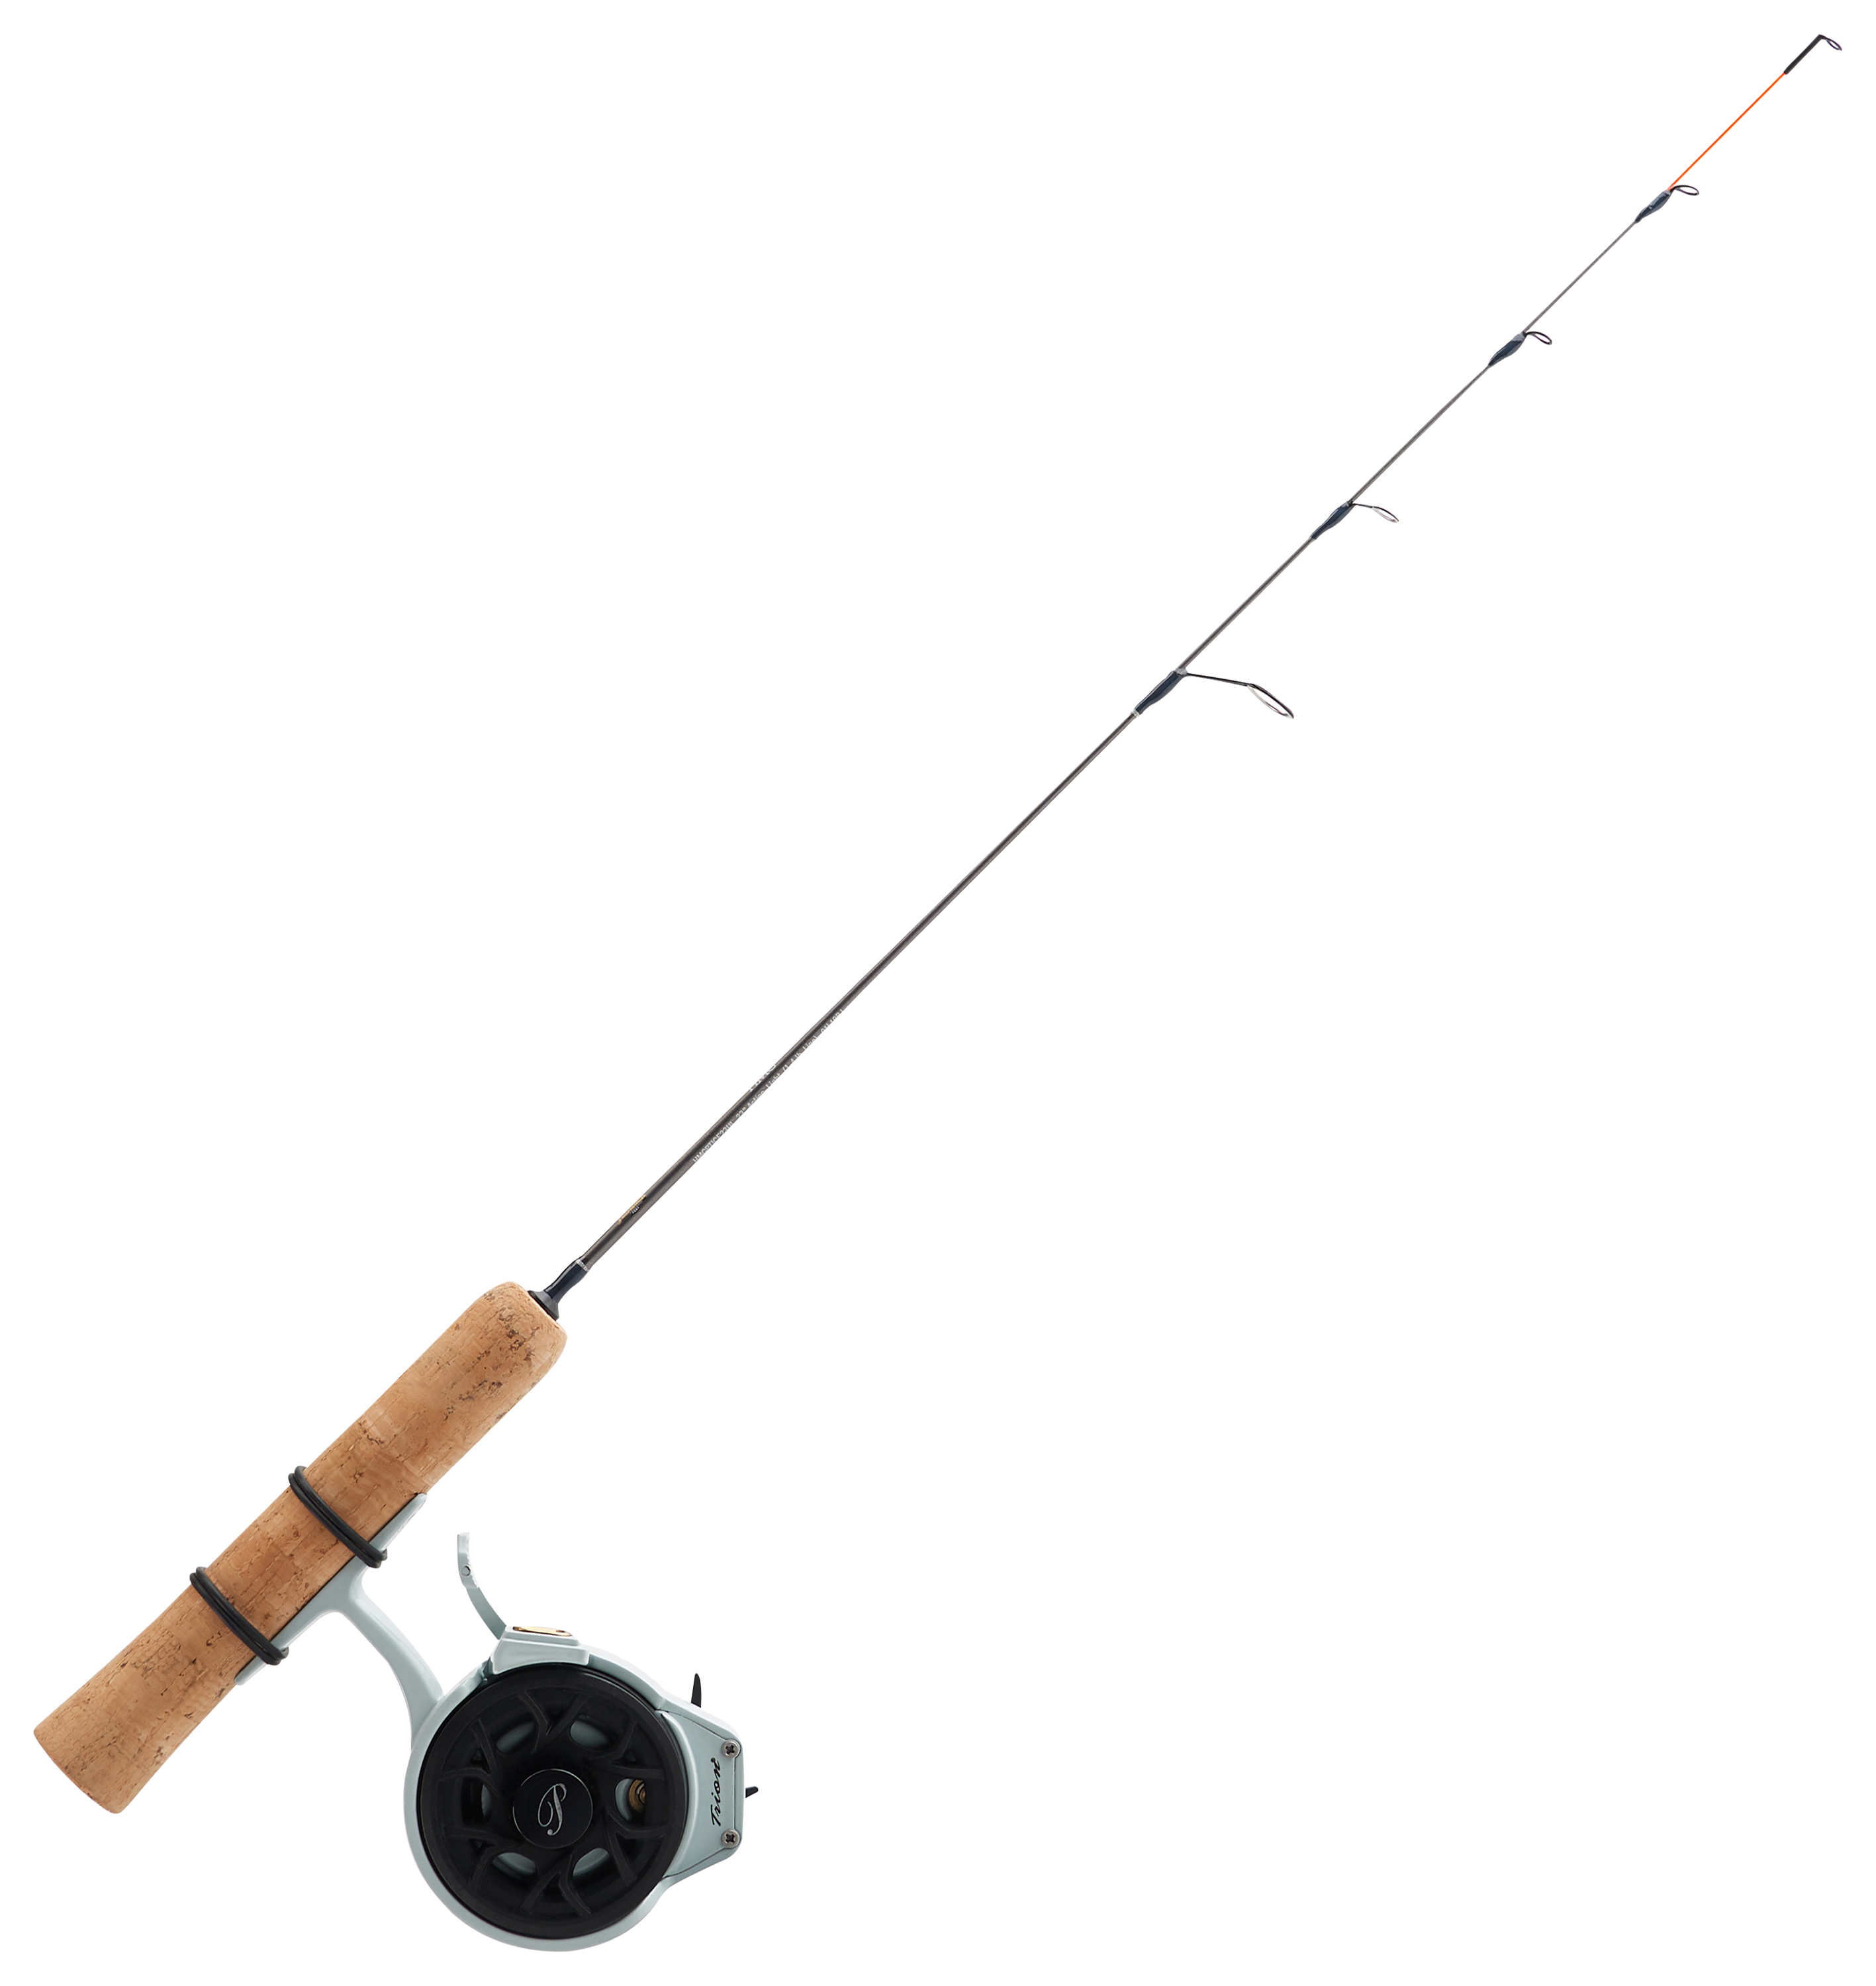 Fenwick HMG Fly Fishing Rods 